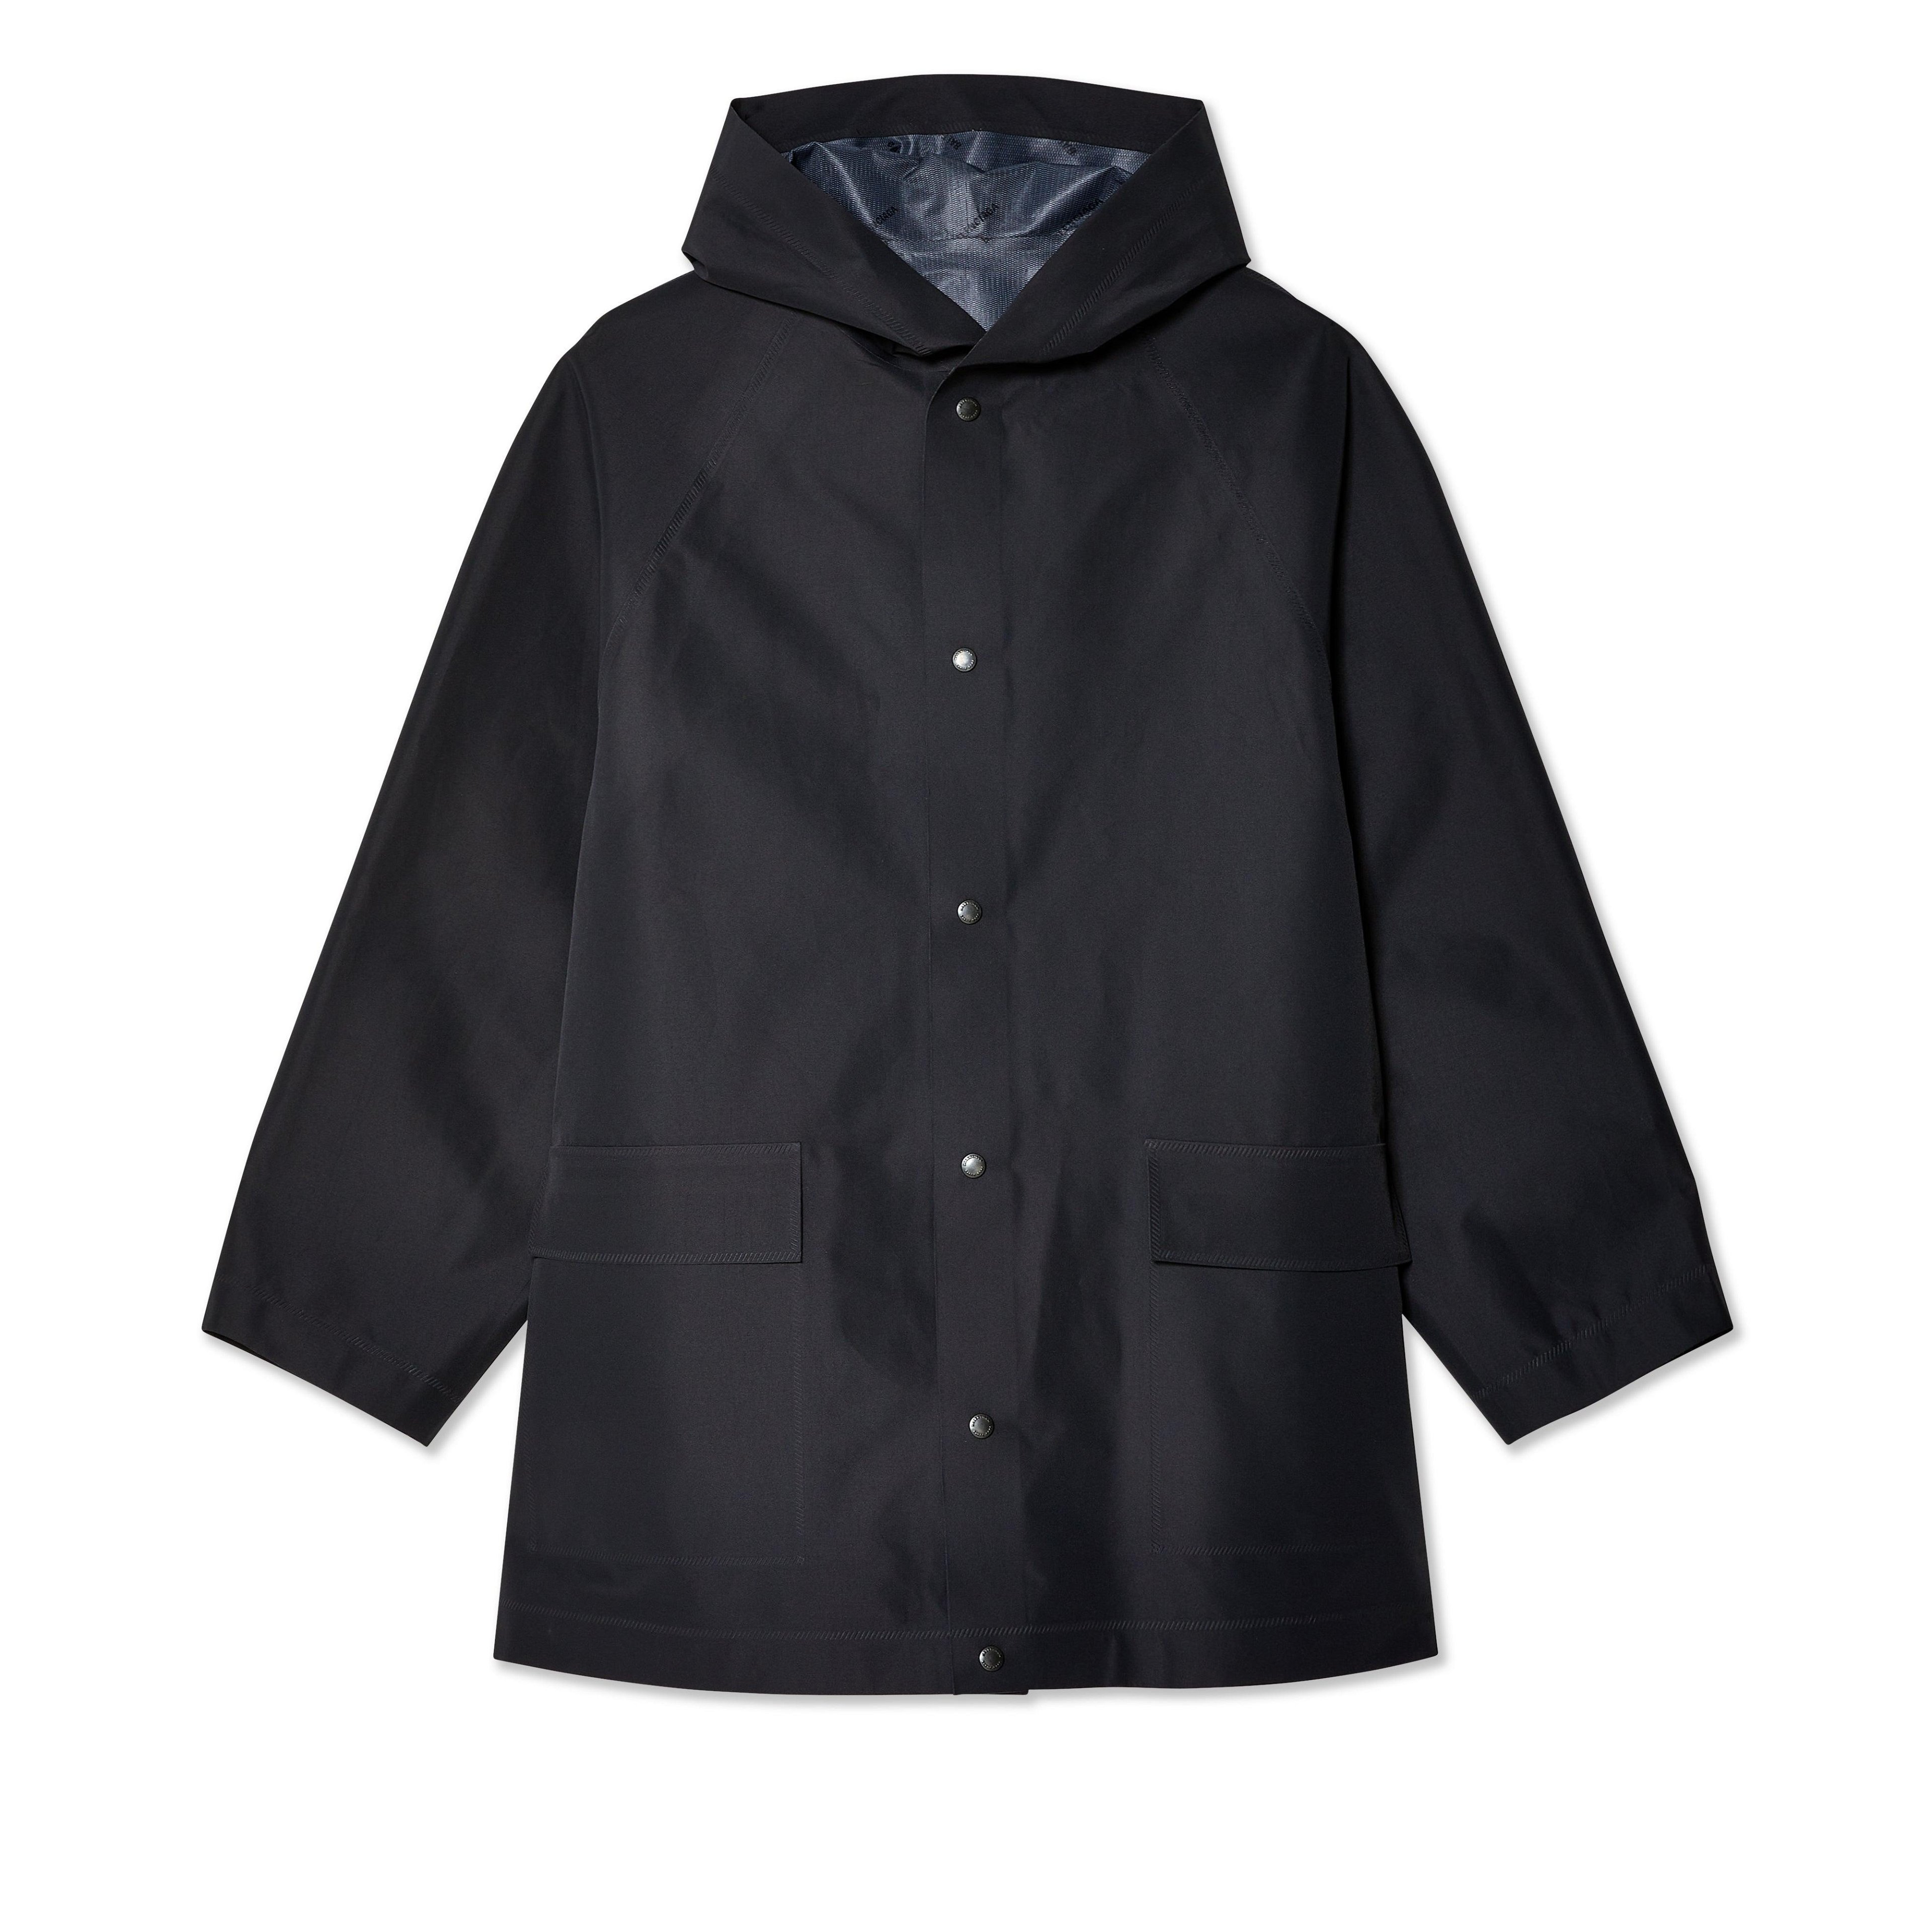 Balenciaga - Men's Hooded Rain Jacket - (Black) by BALENCIAGA